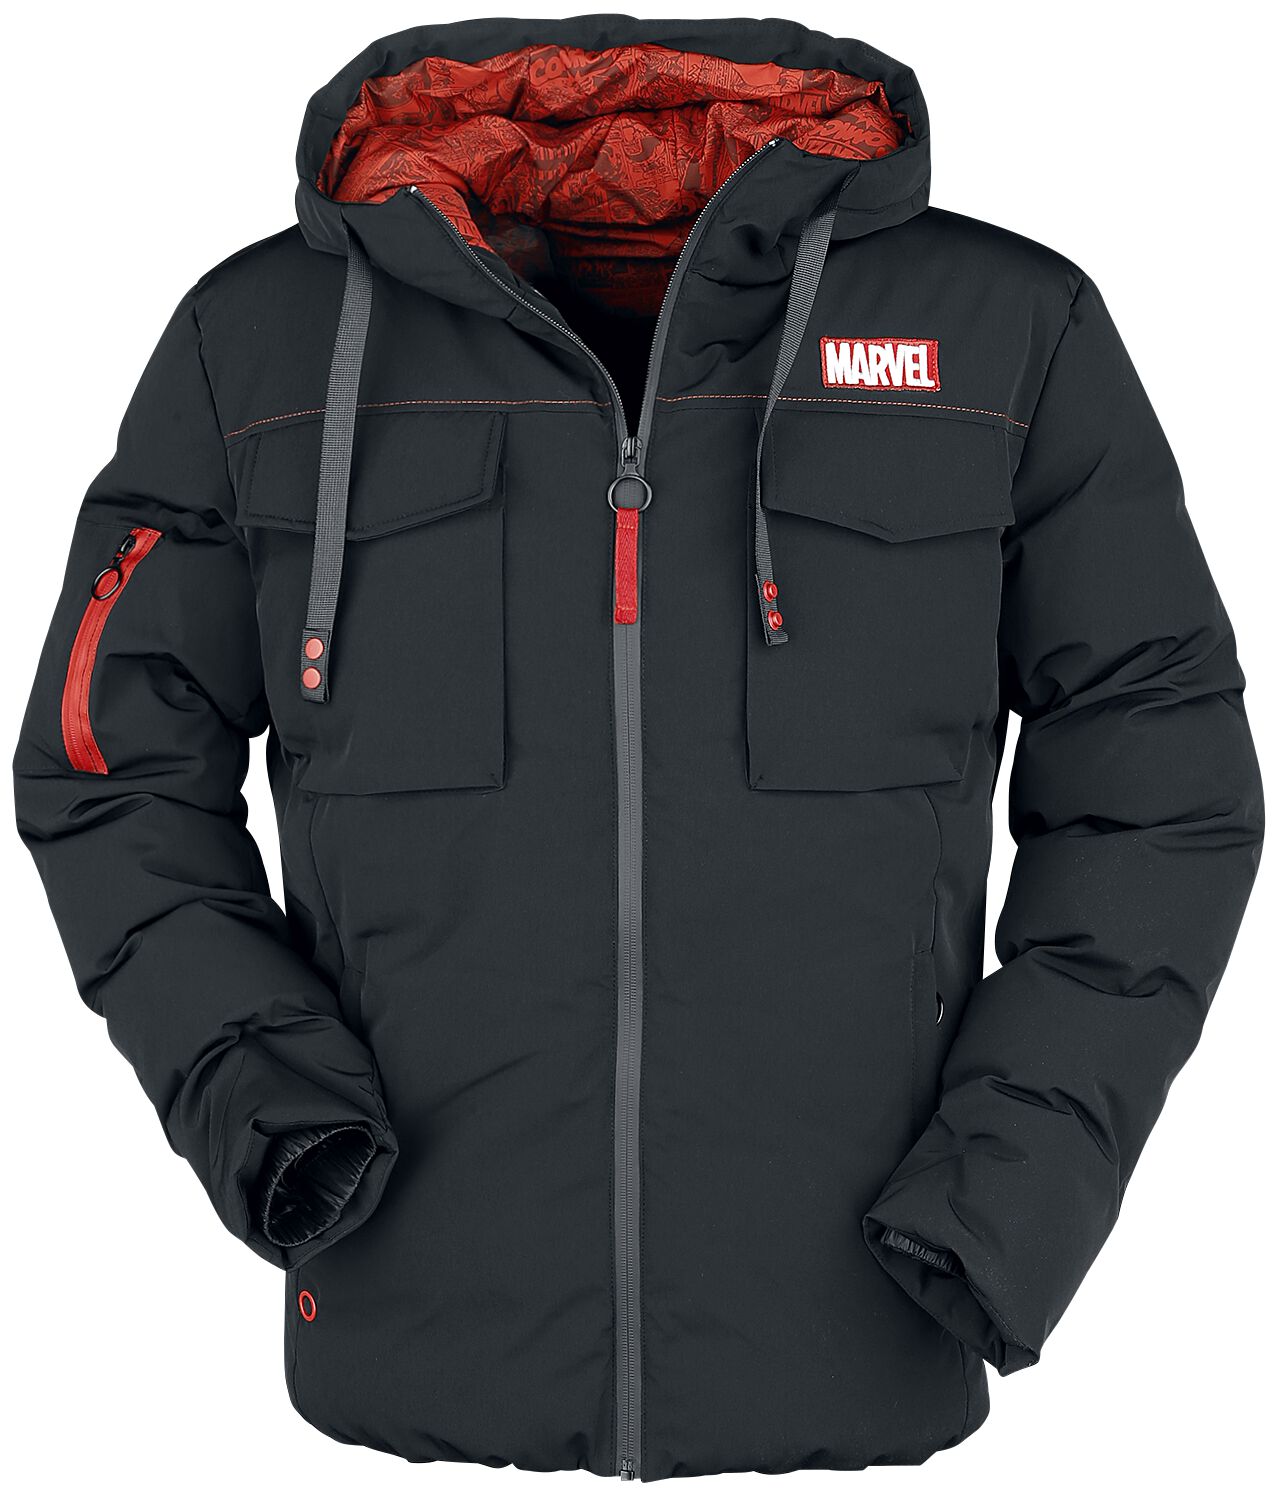 Marvel - Marvel Winterjacke - Marvel Logo - S bis XL - für Männer - Größe L - schwarz  - EMP exklusives Merchandise! von Marvel